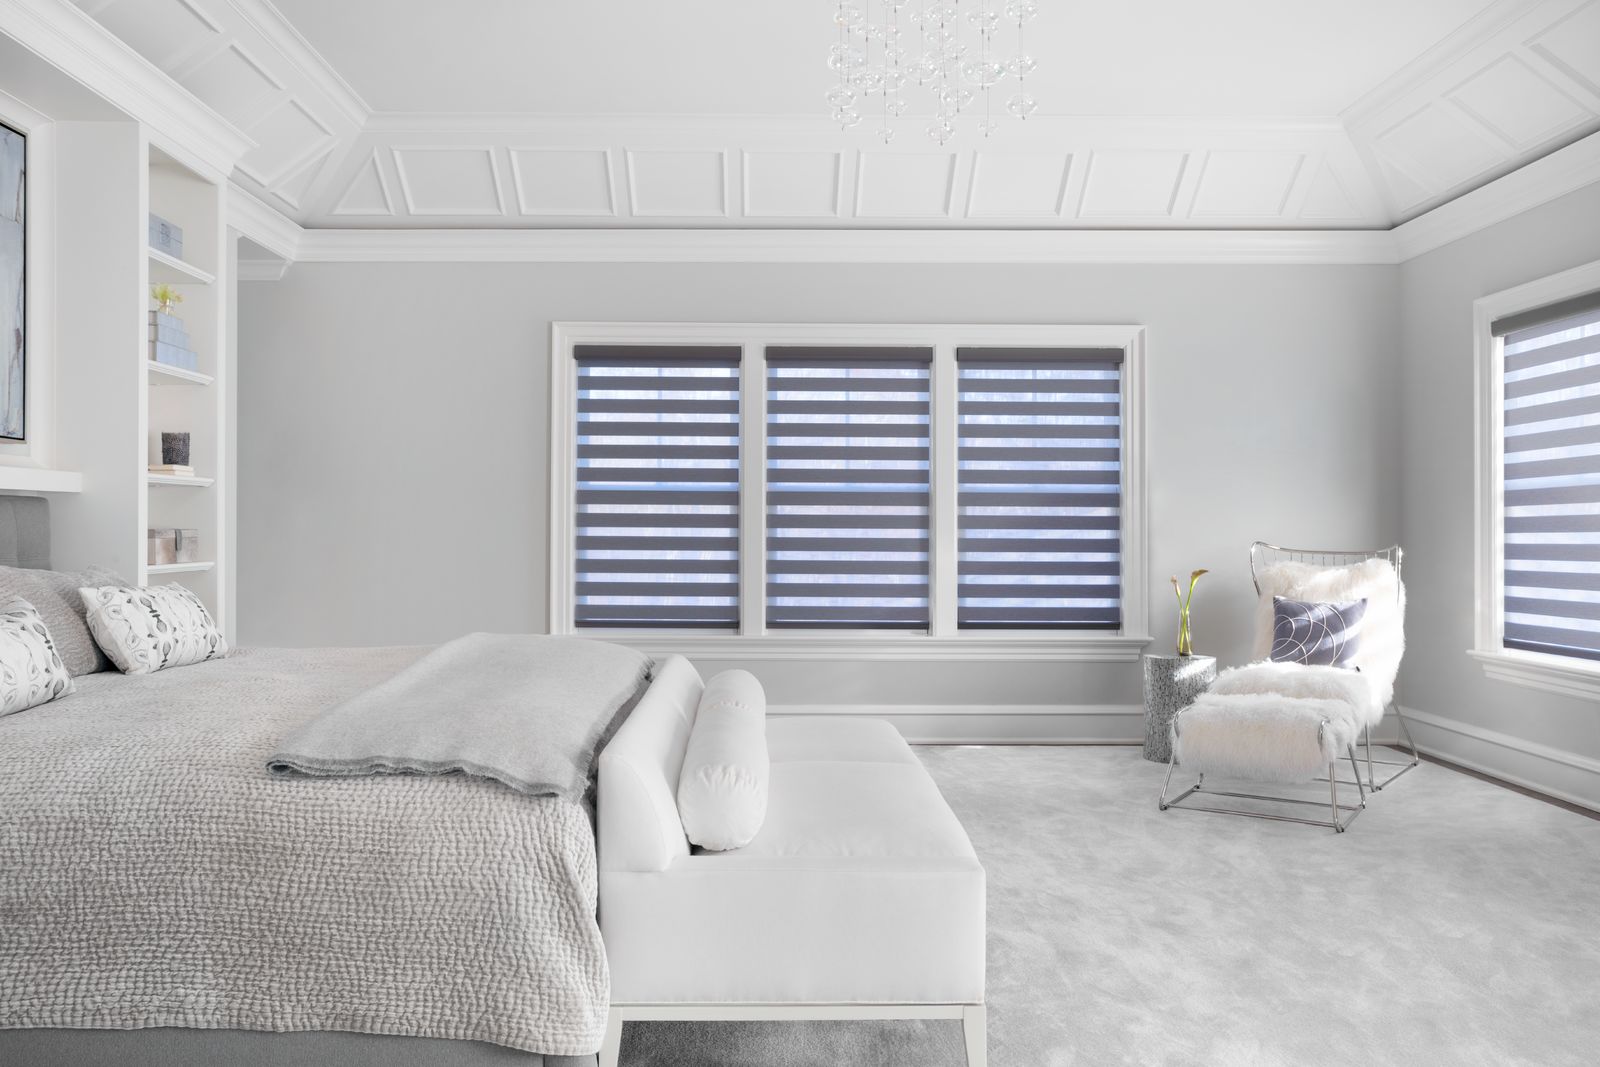 Une grande chambre à coucher moderne habillée de stores diaphanes « Cascade » à rayures grises et transparentes.